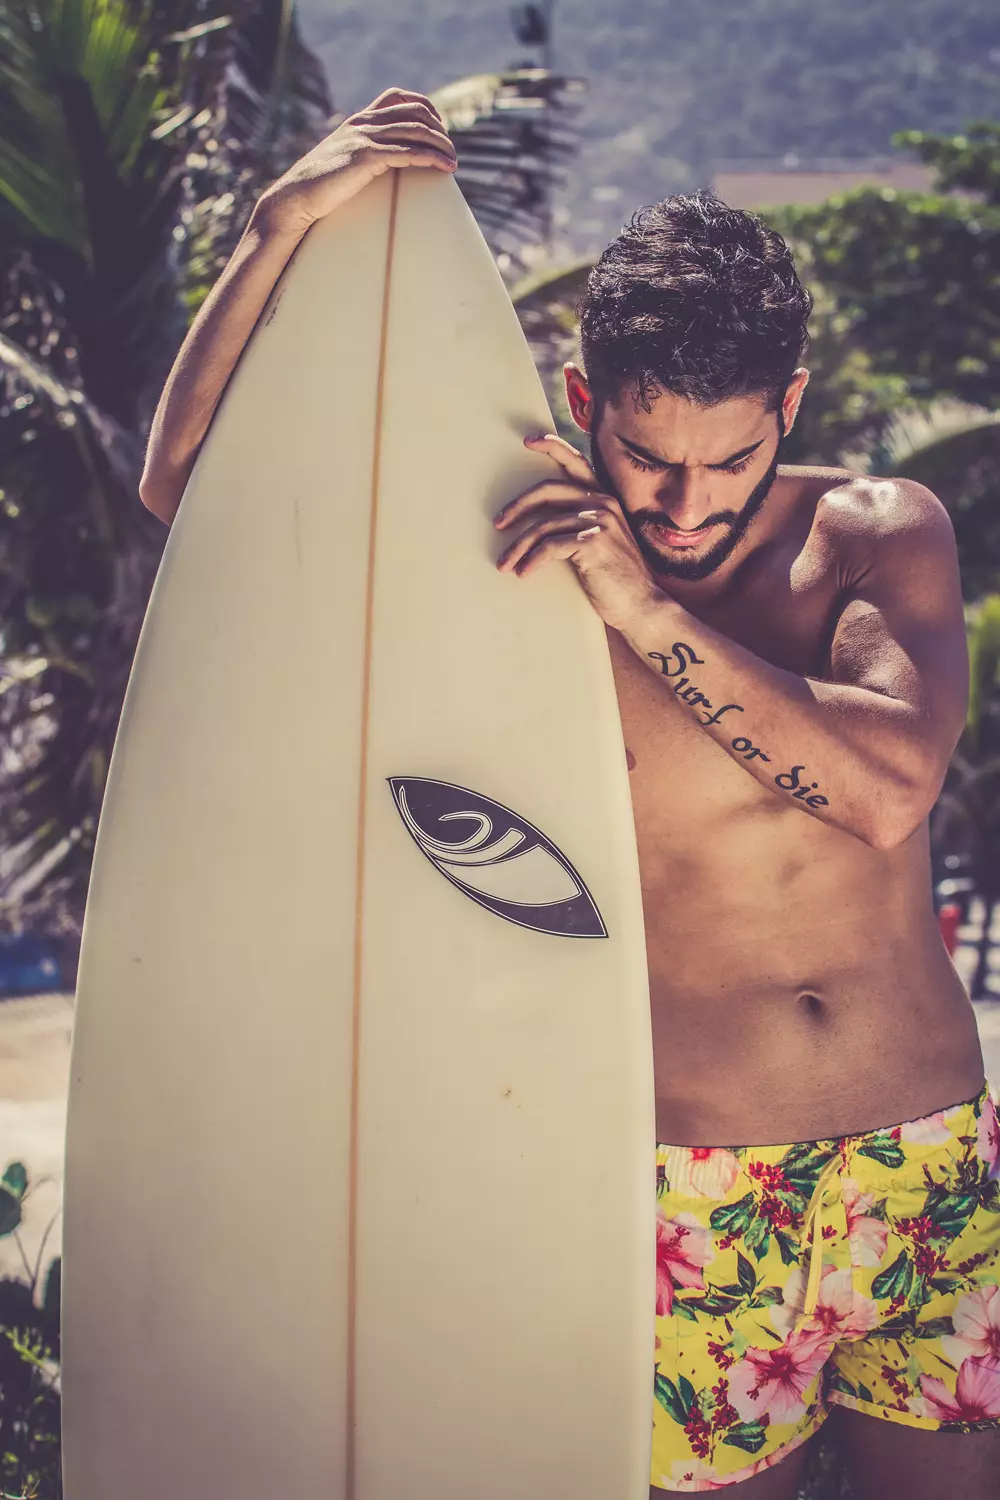 Idemo u Rio!!! Susret s Williamom Magalhãesom u sunčanoj dobroj atmosferi koju je snimila Simone Fransisco. Surfer i glumac, fotografiran na plaži u Arpoador Rio de Janeiru.